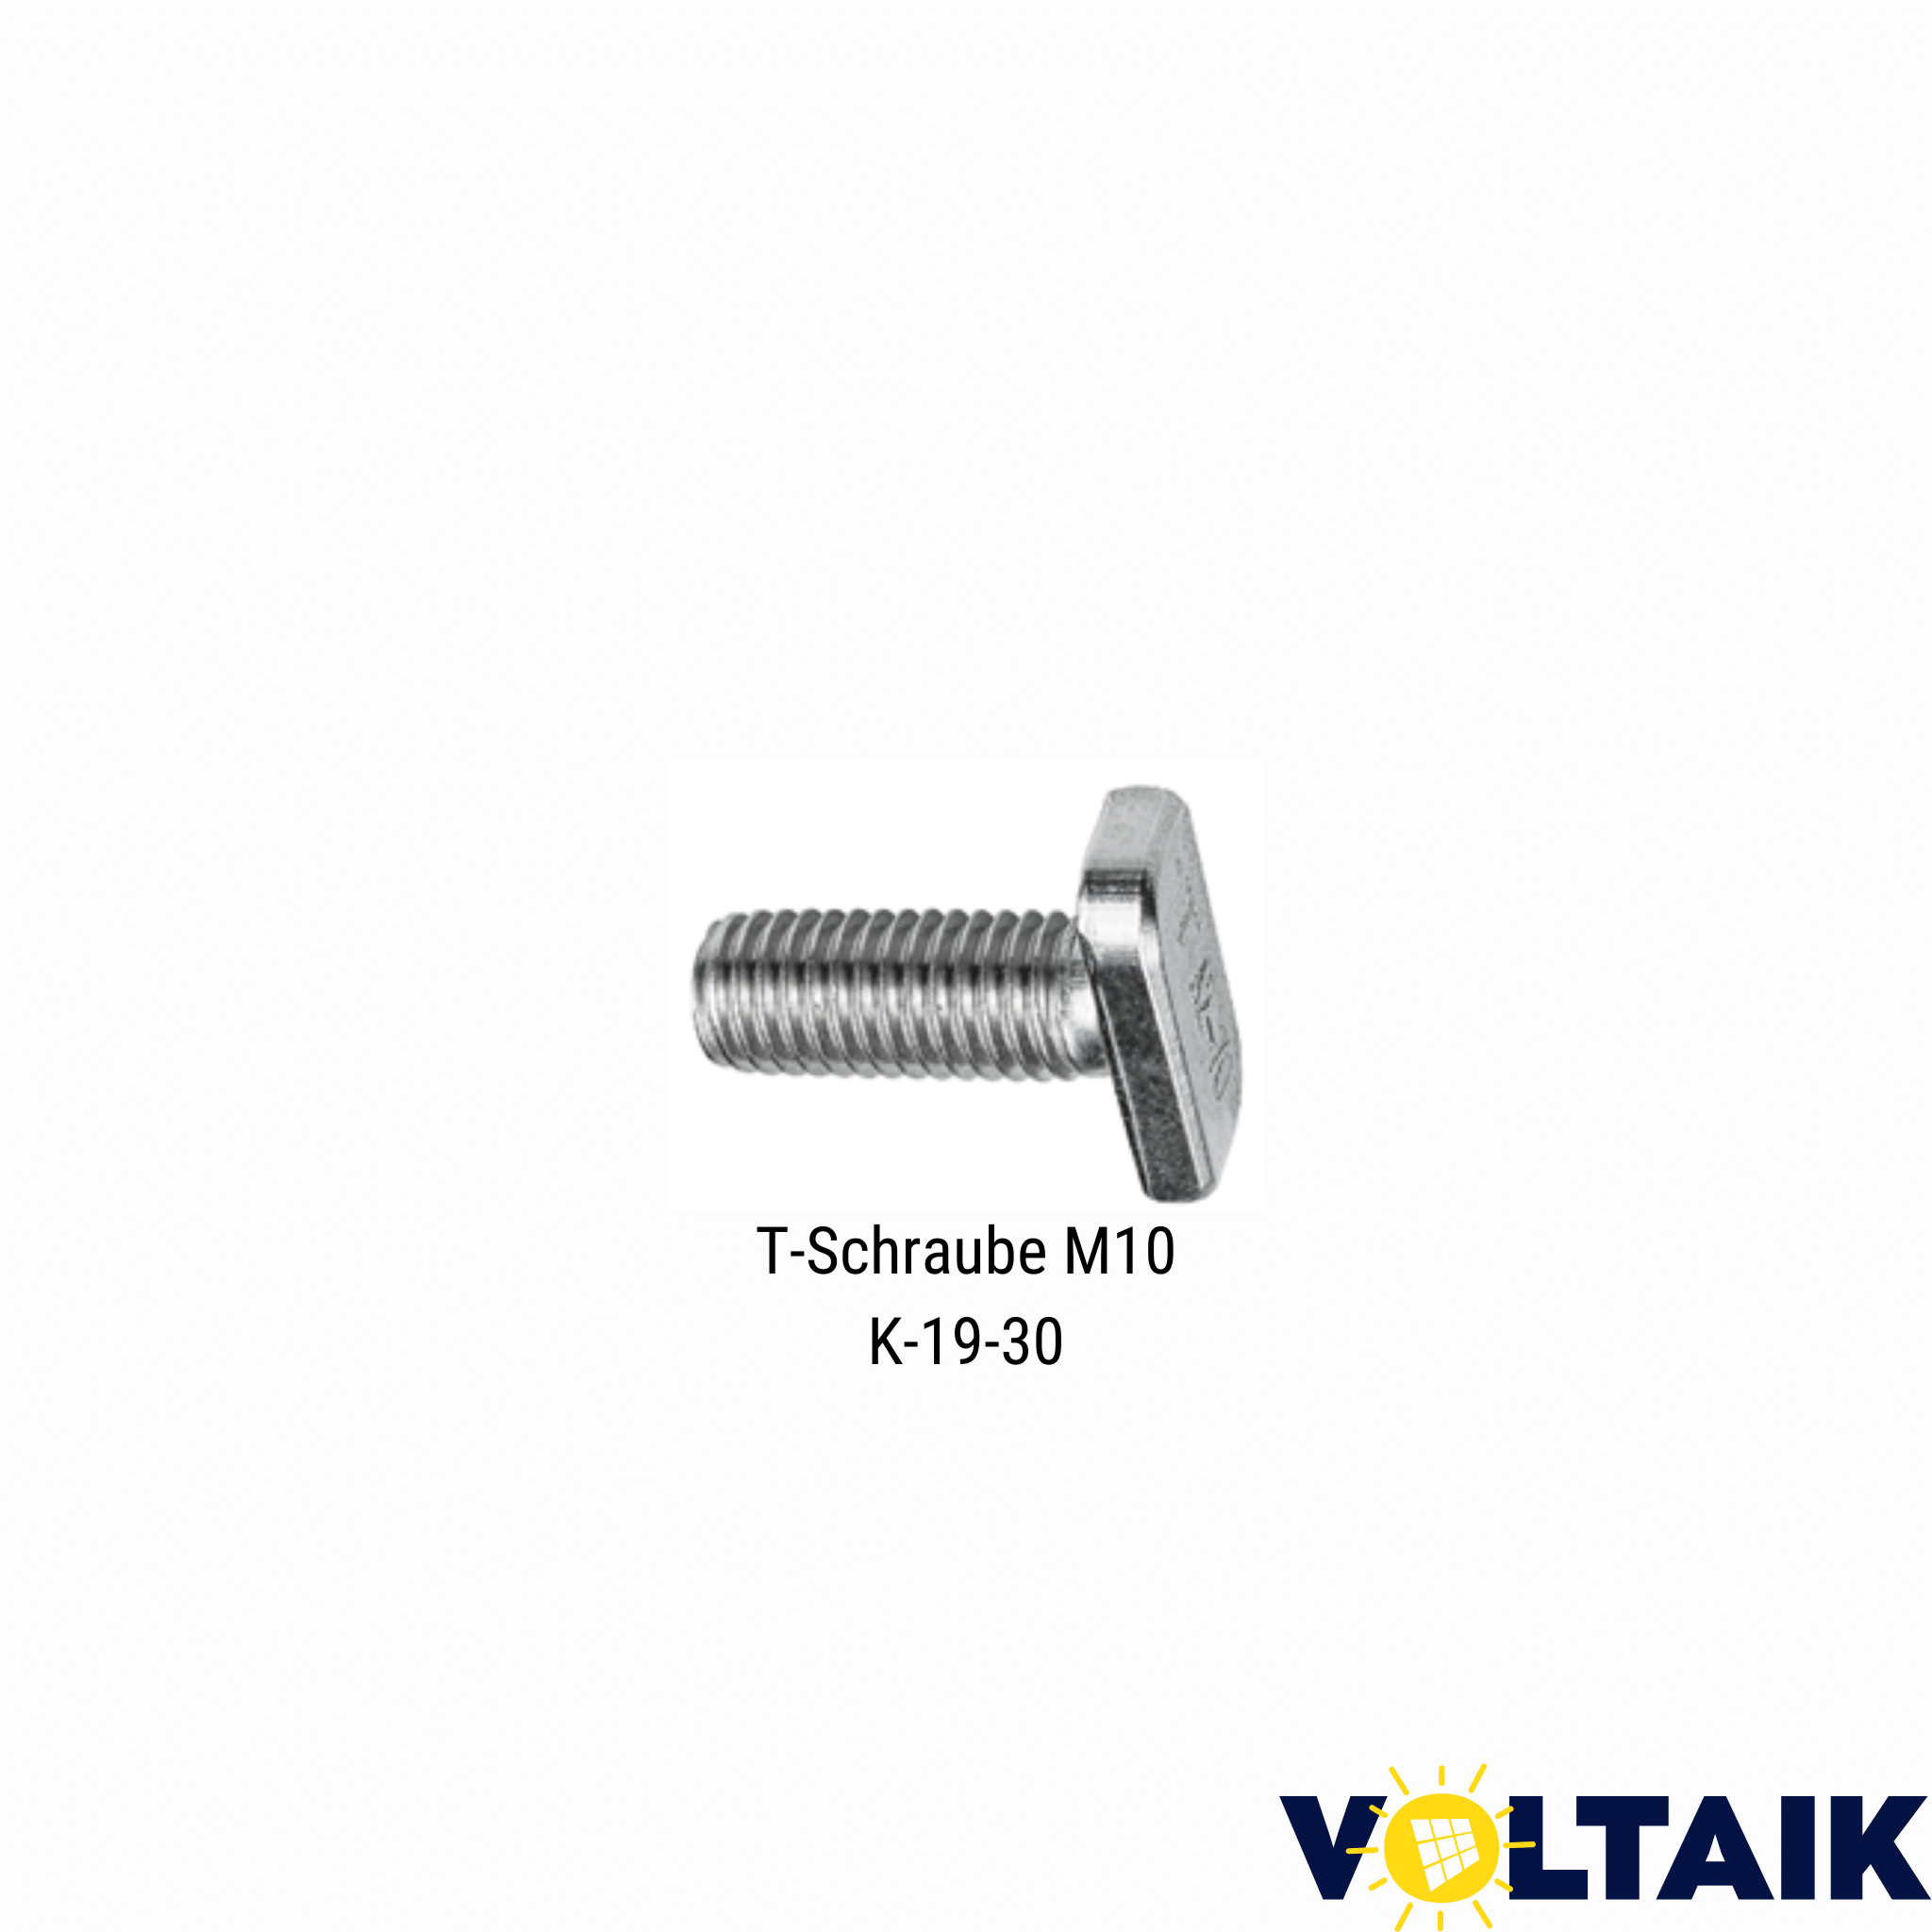 T-Nut Schraube M10 - Voltaik.shop